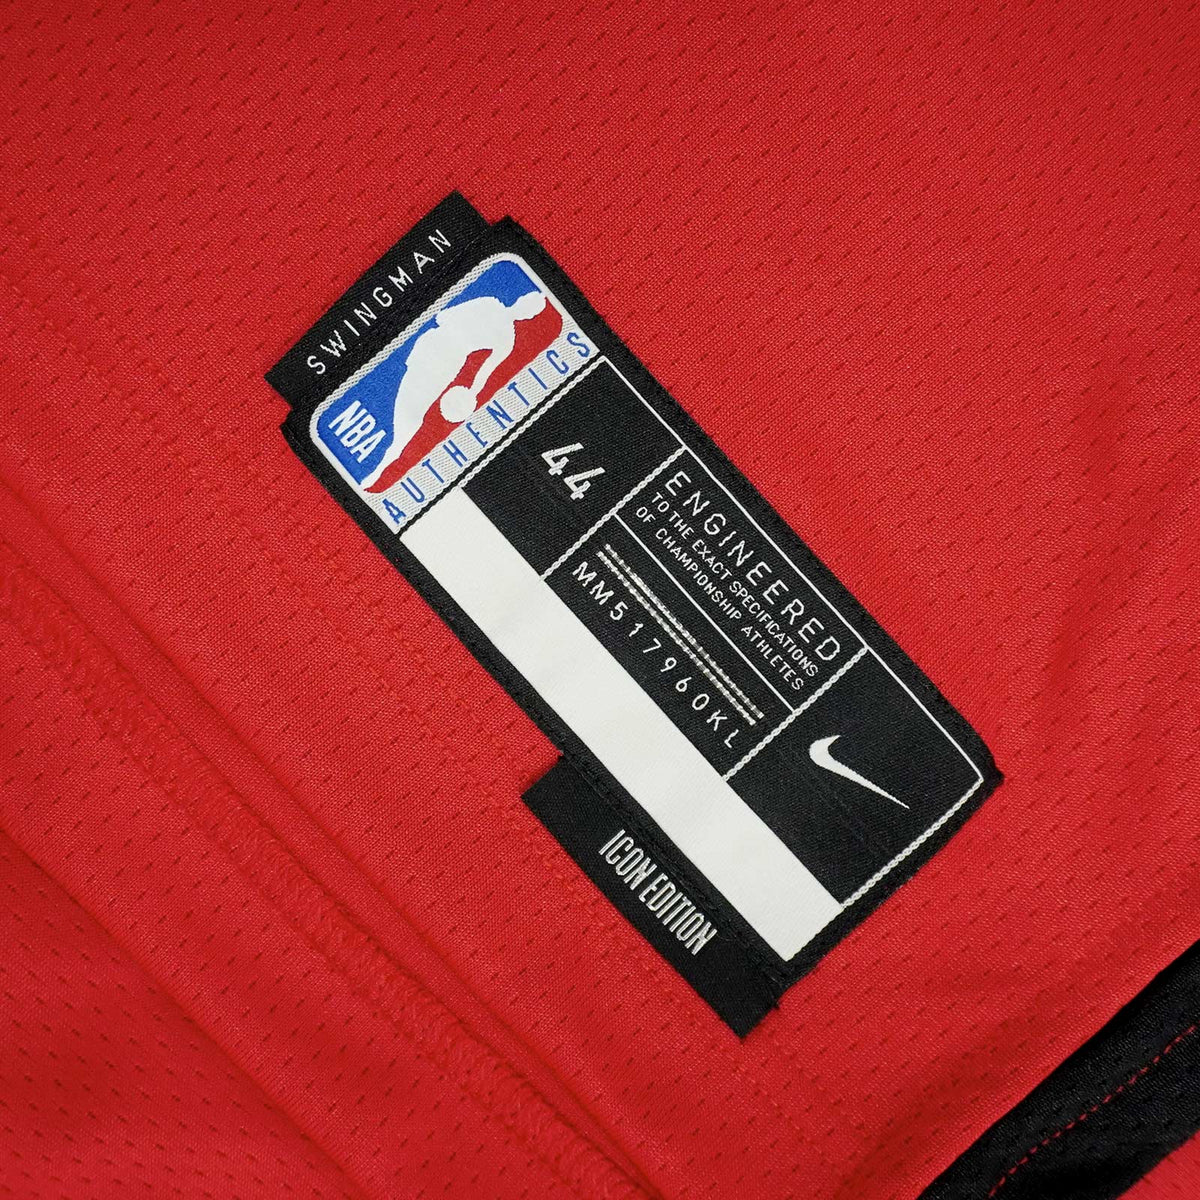 Jalen Green Houston Rockets City Edition Nike Dri-FIT NBA Swingman Jersey